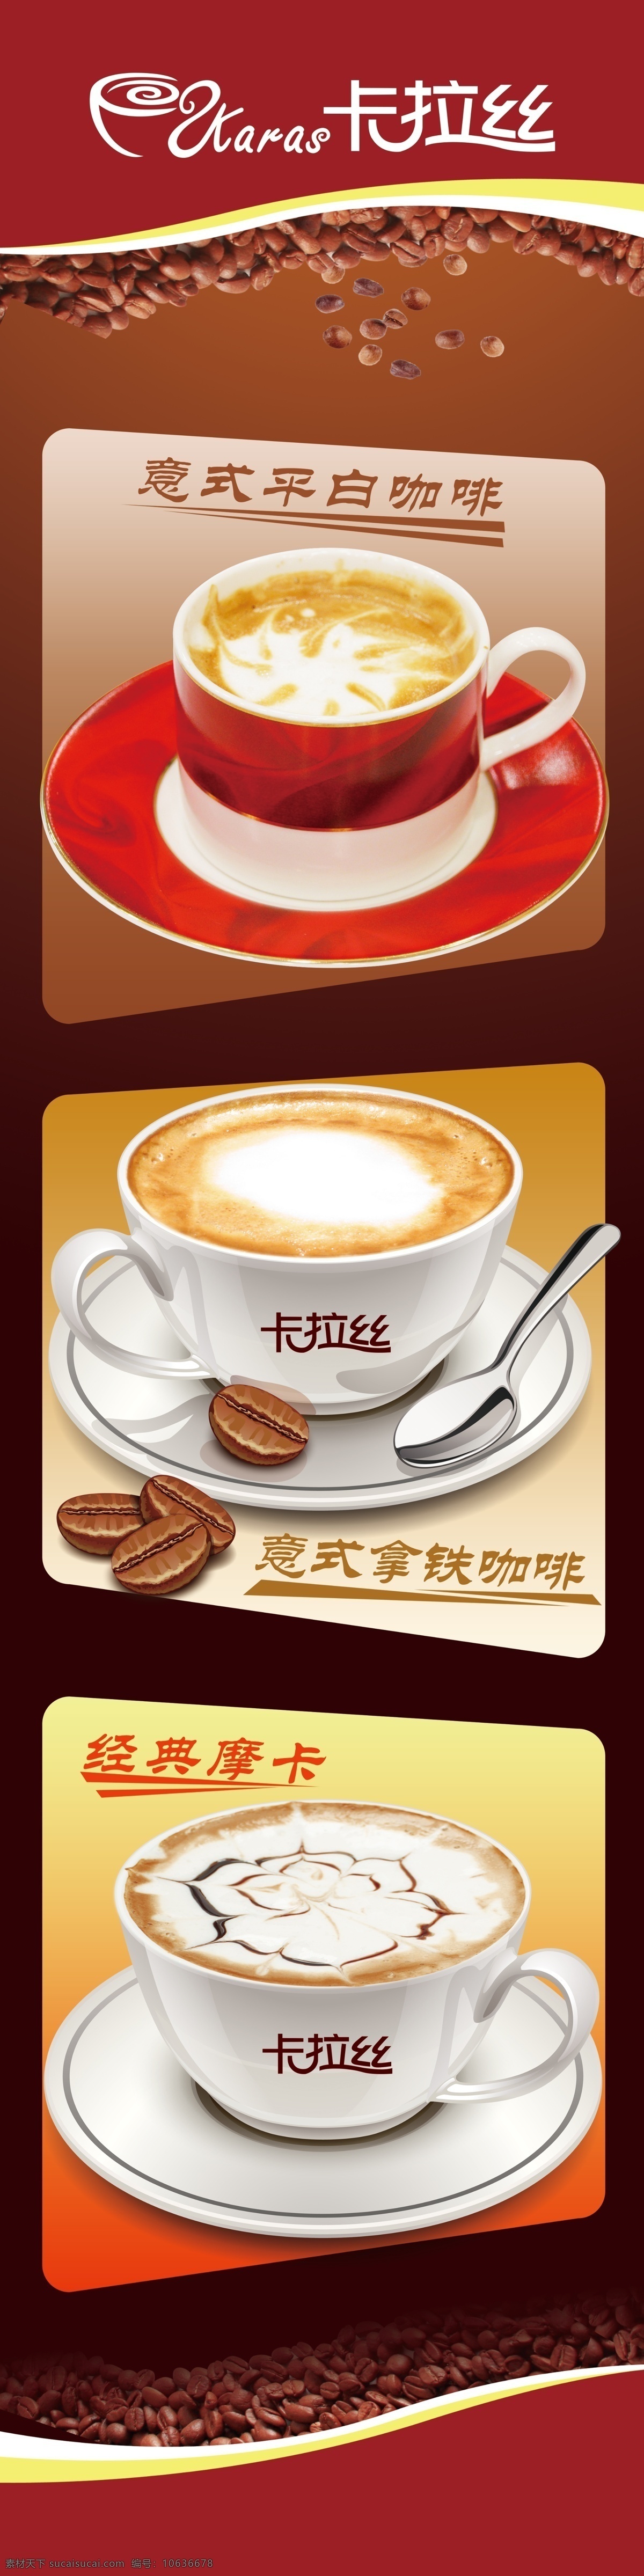 咖啡招贴 咖啡促销 咖啡热卖 招贴 灯片 海报